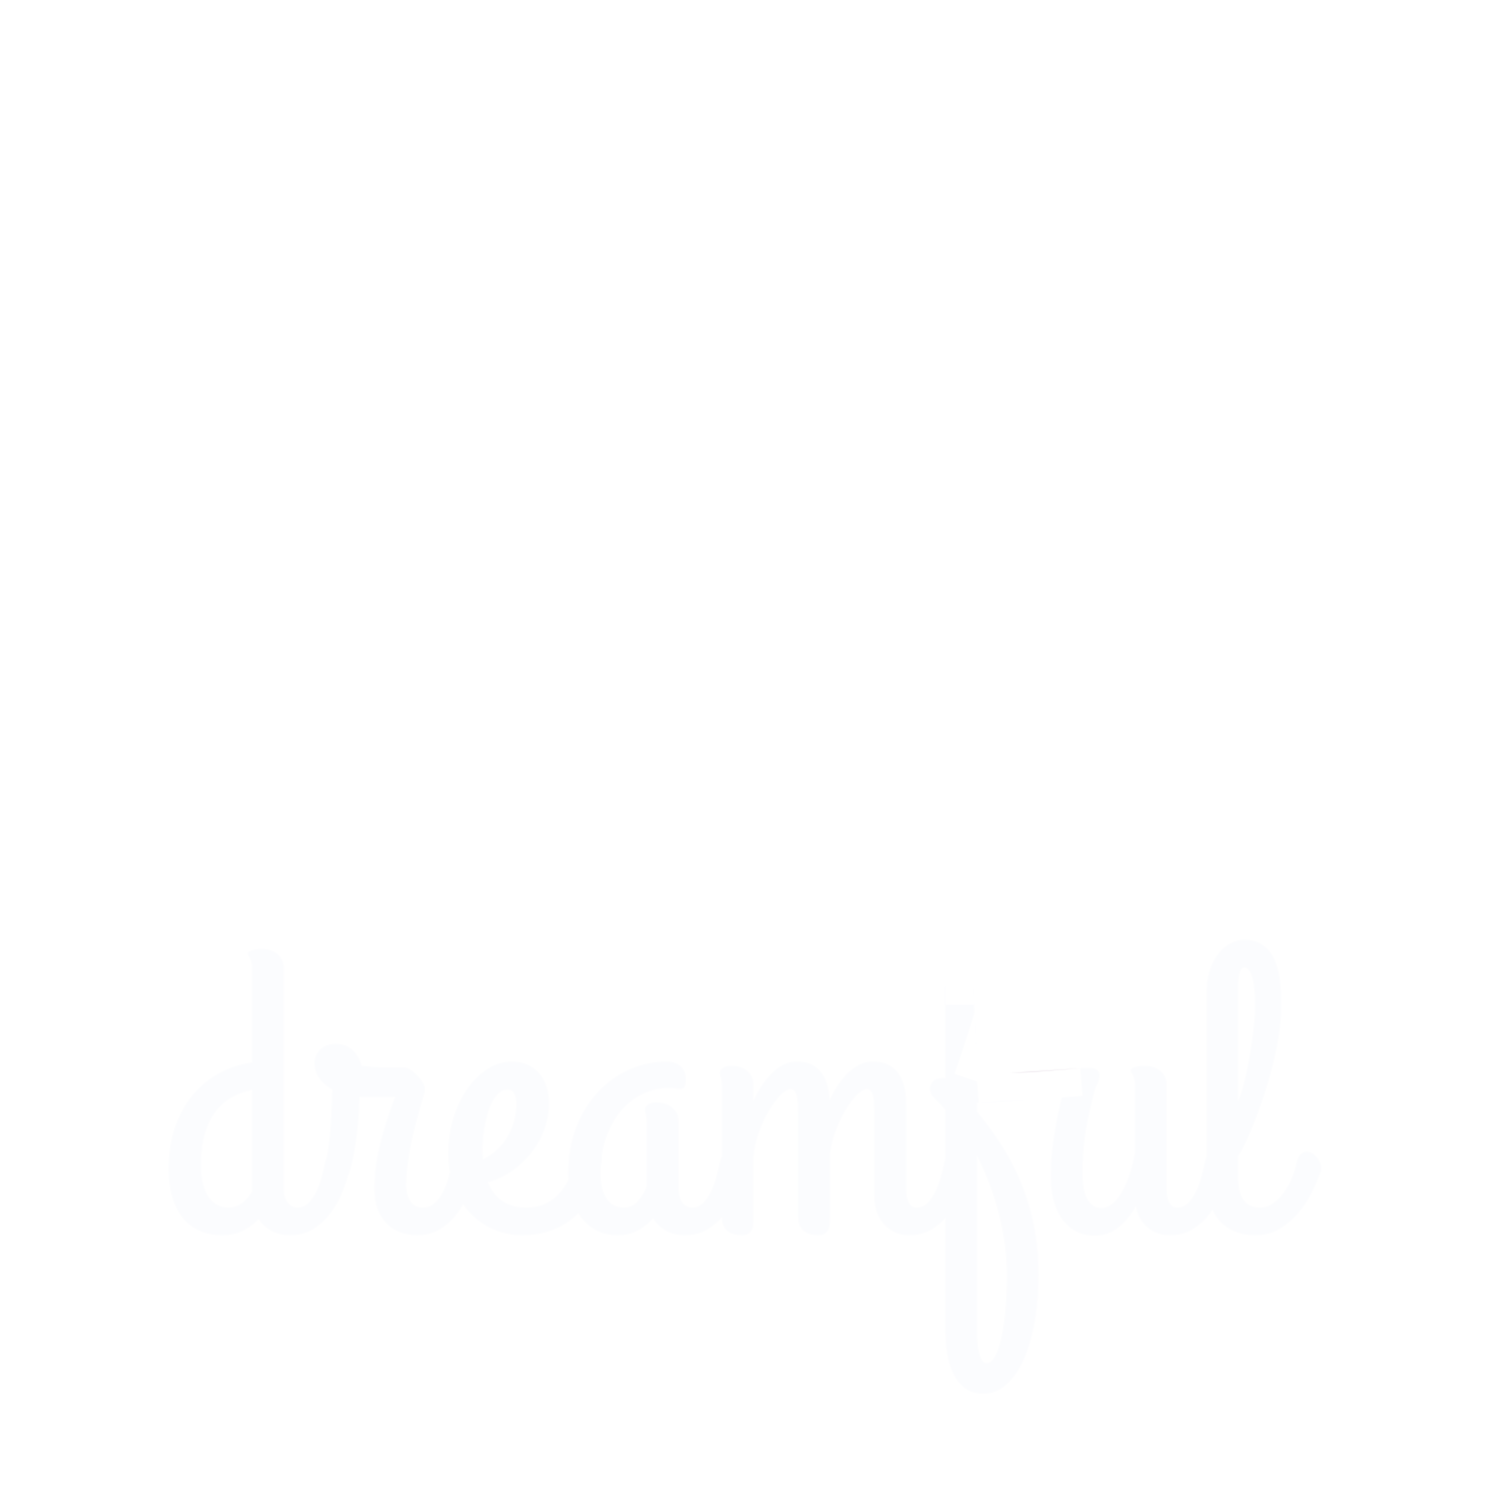 Dreamful